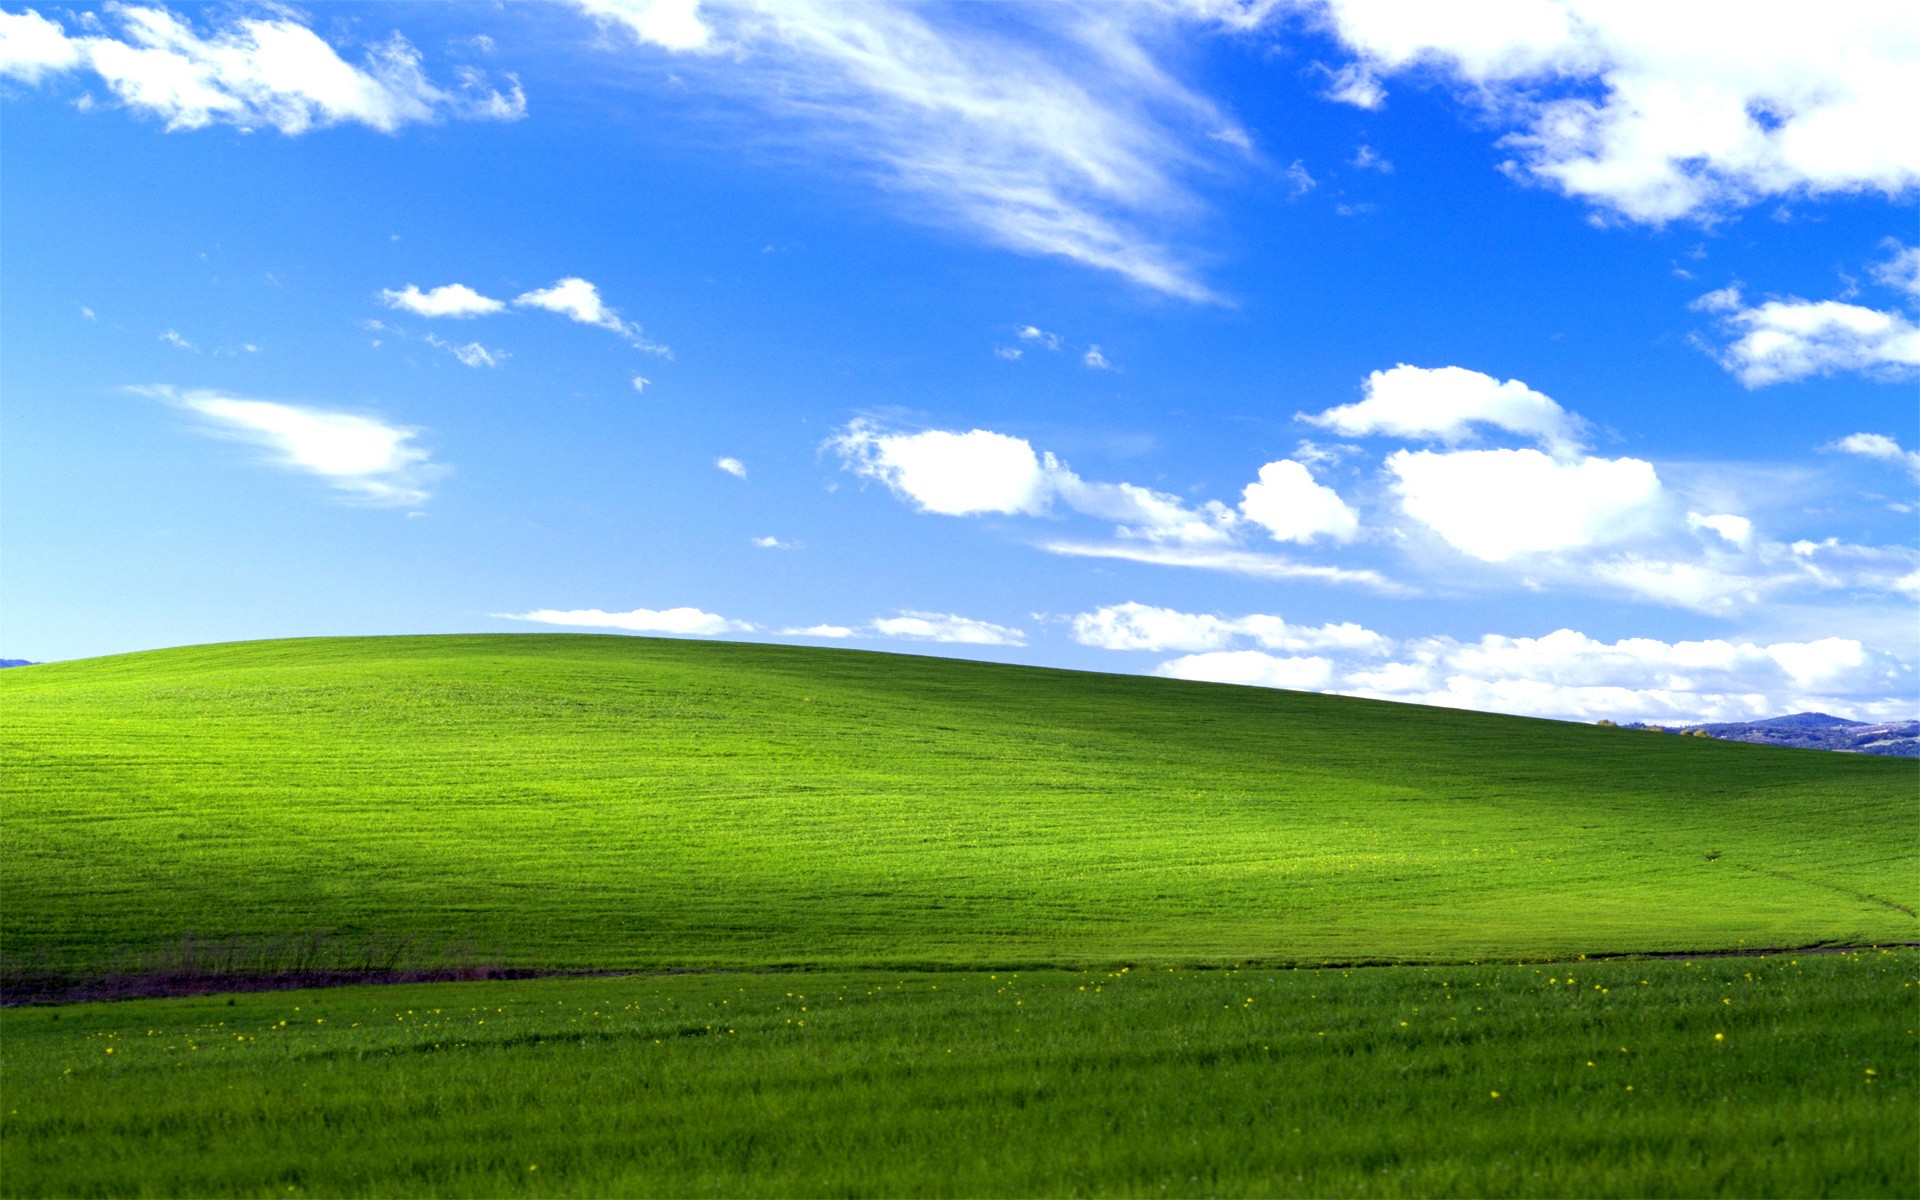 Windows XP cung cấp cho chúng ta hơn 20 hình nền khác nhau để lựa chọn và làm đẹp cho màn hình desktop. Thật tuyệt vời khi chúng ta có thể thay đổi tùy thích và tạo ra không gian làm việc độc đáo và cá nhân.